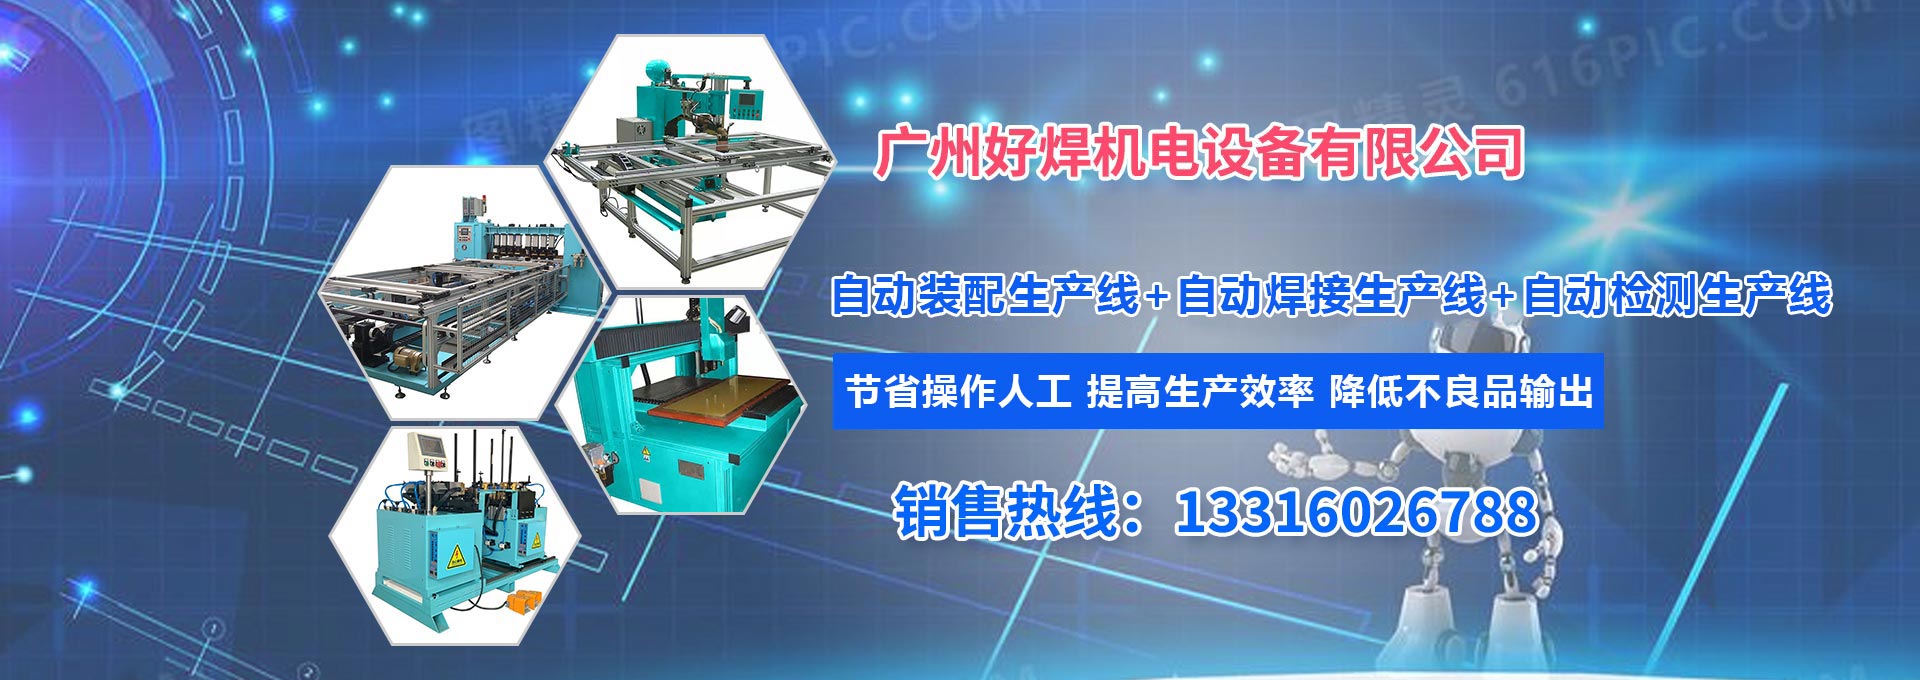 广州好焊机電(diàn)设备有(yǒu)限公司